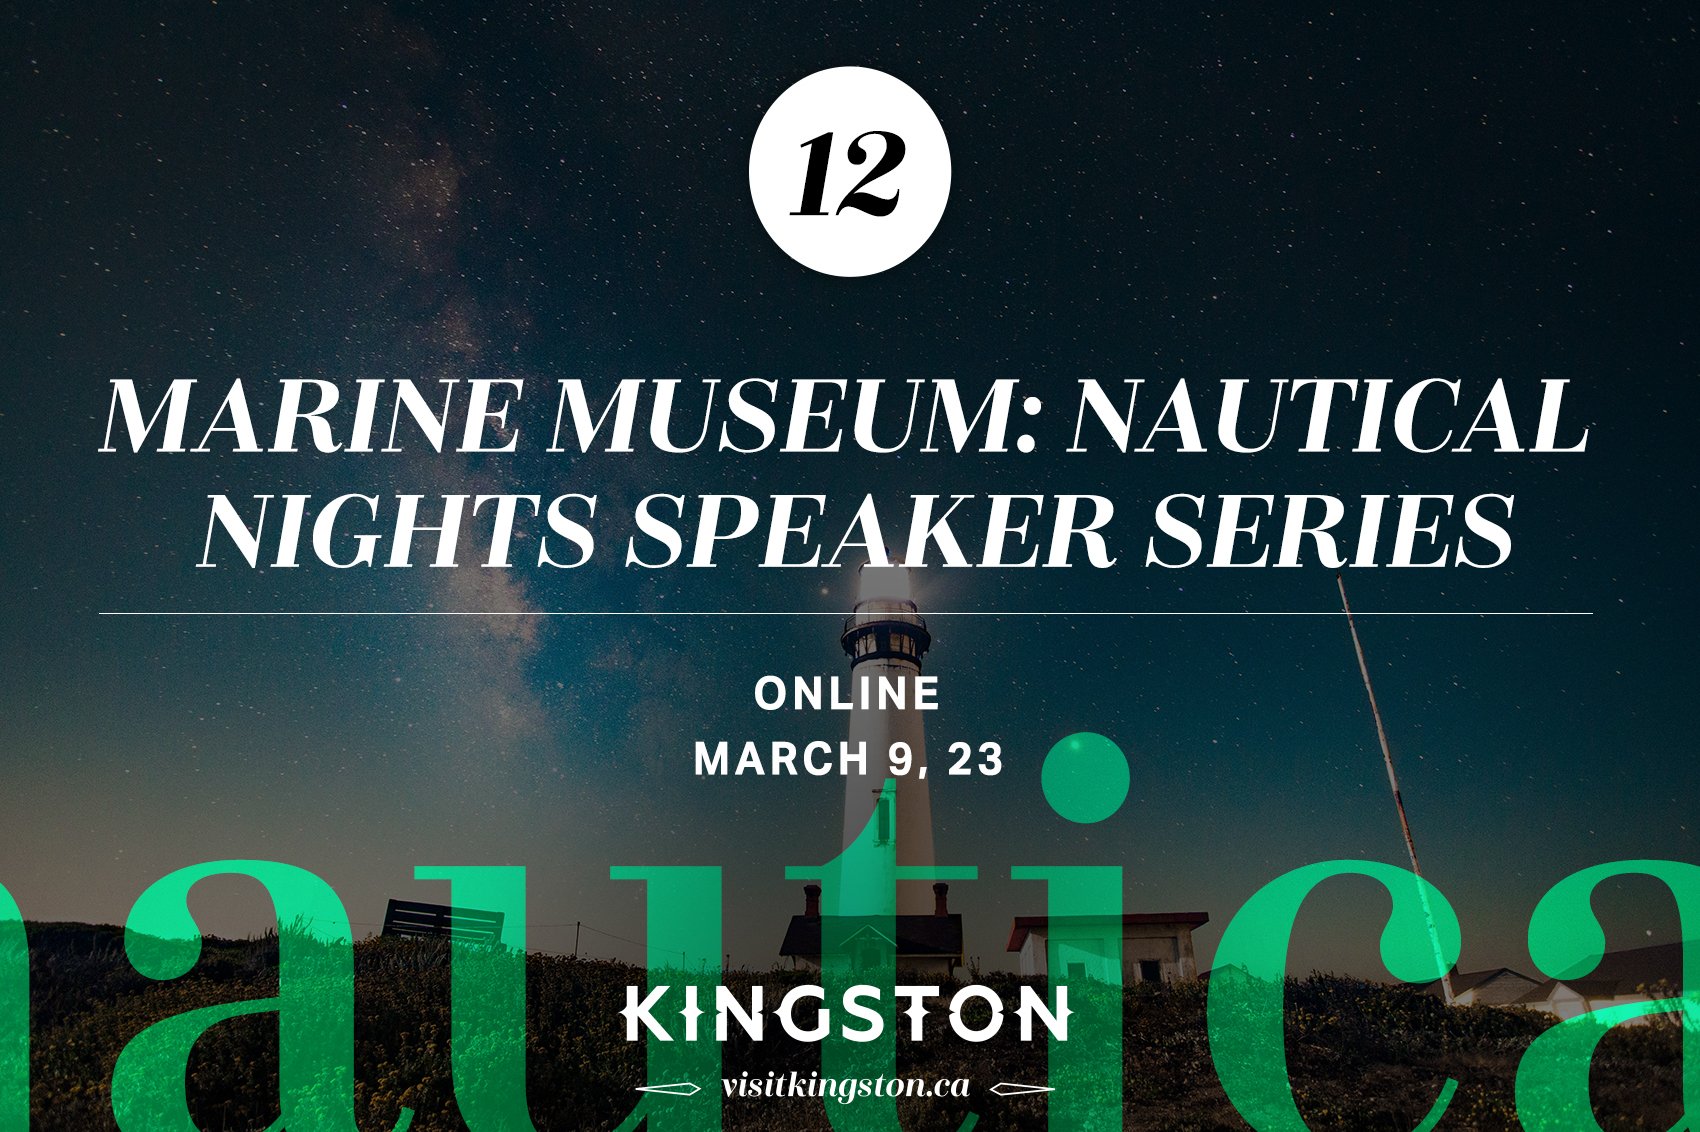 Marine Museum: Nautical Nights Speaker Series